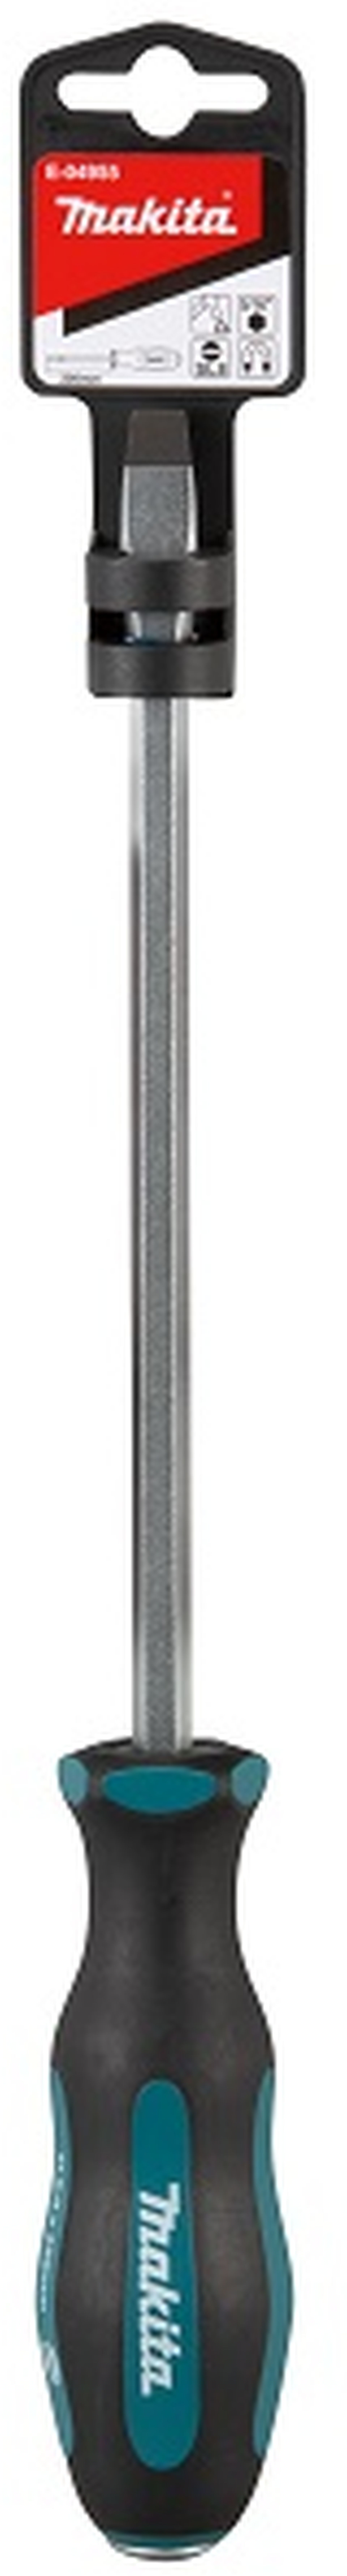 MAKITA E-04955 šroubovák plochý průchozí SL8.0 délka 200mm